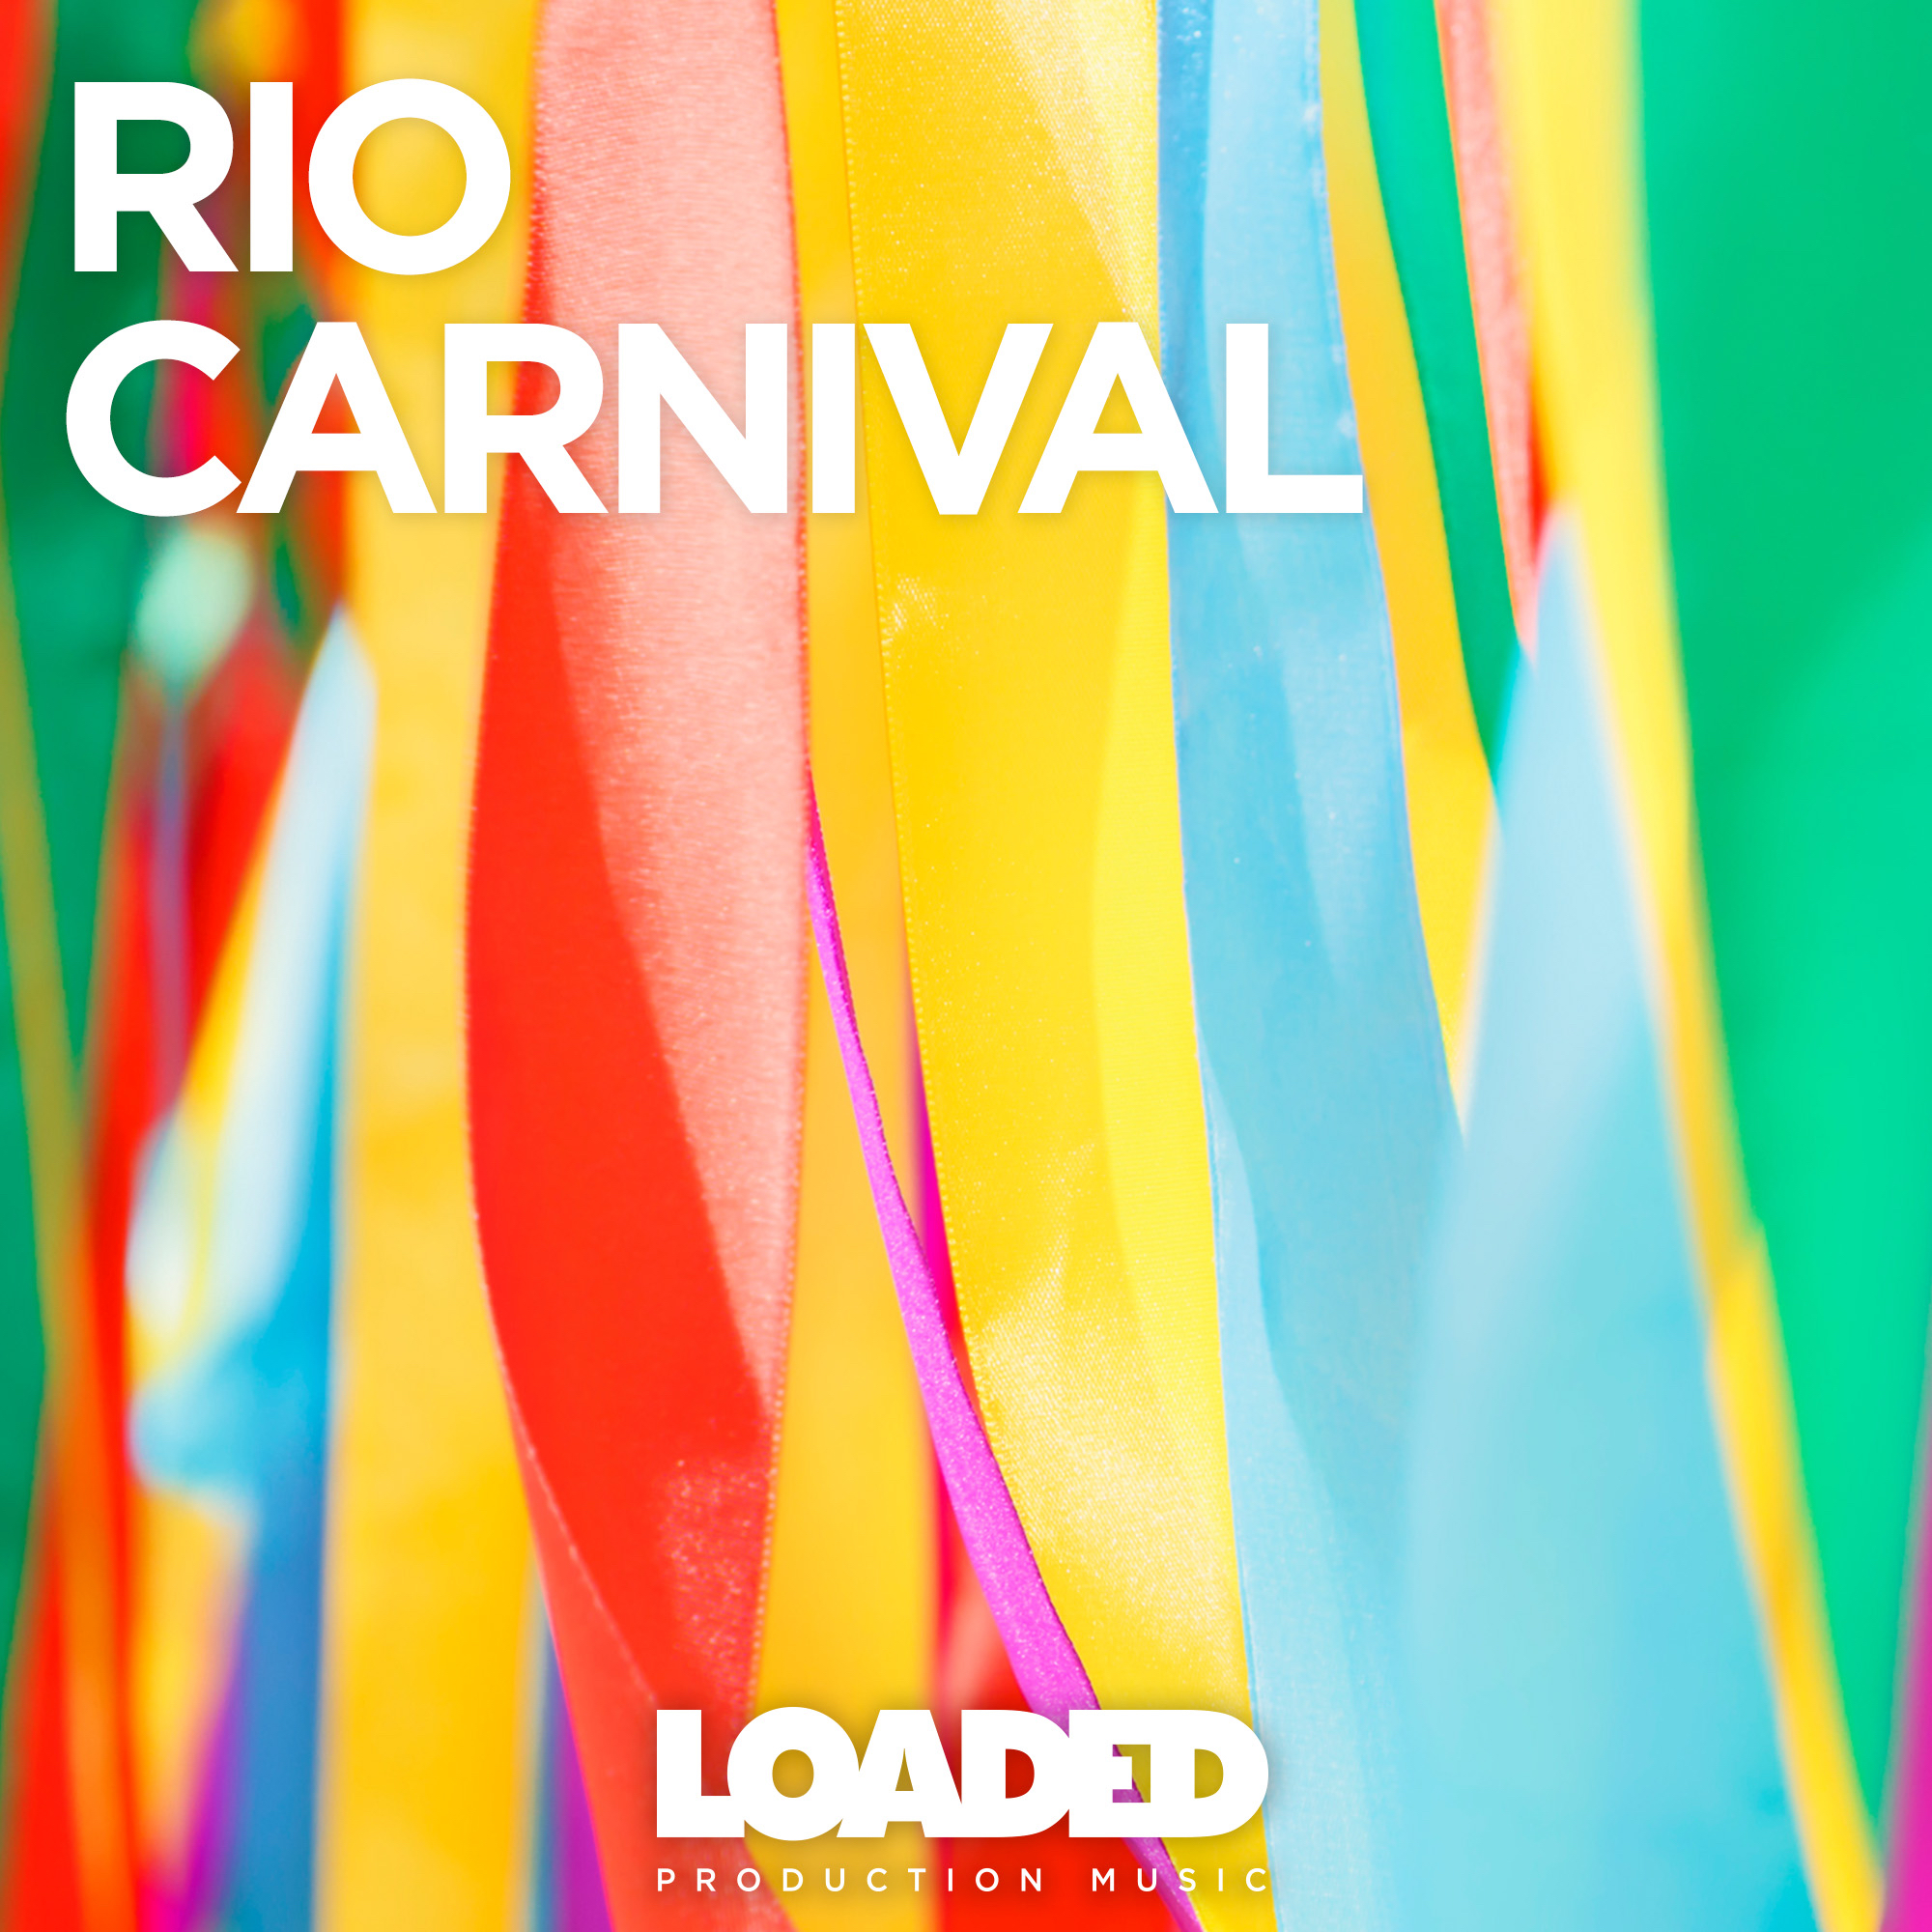 LPM 026 - Rio Carnival - Album Cover